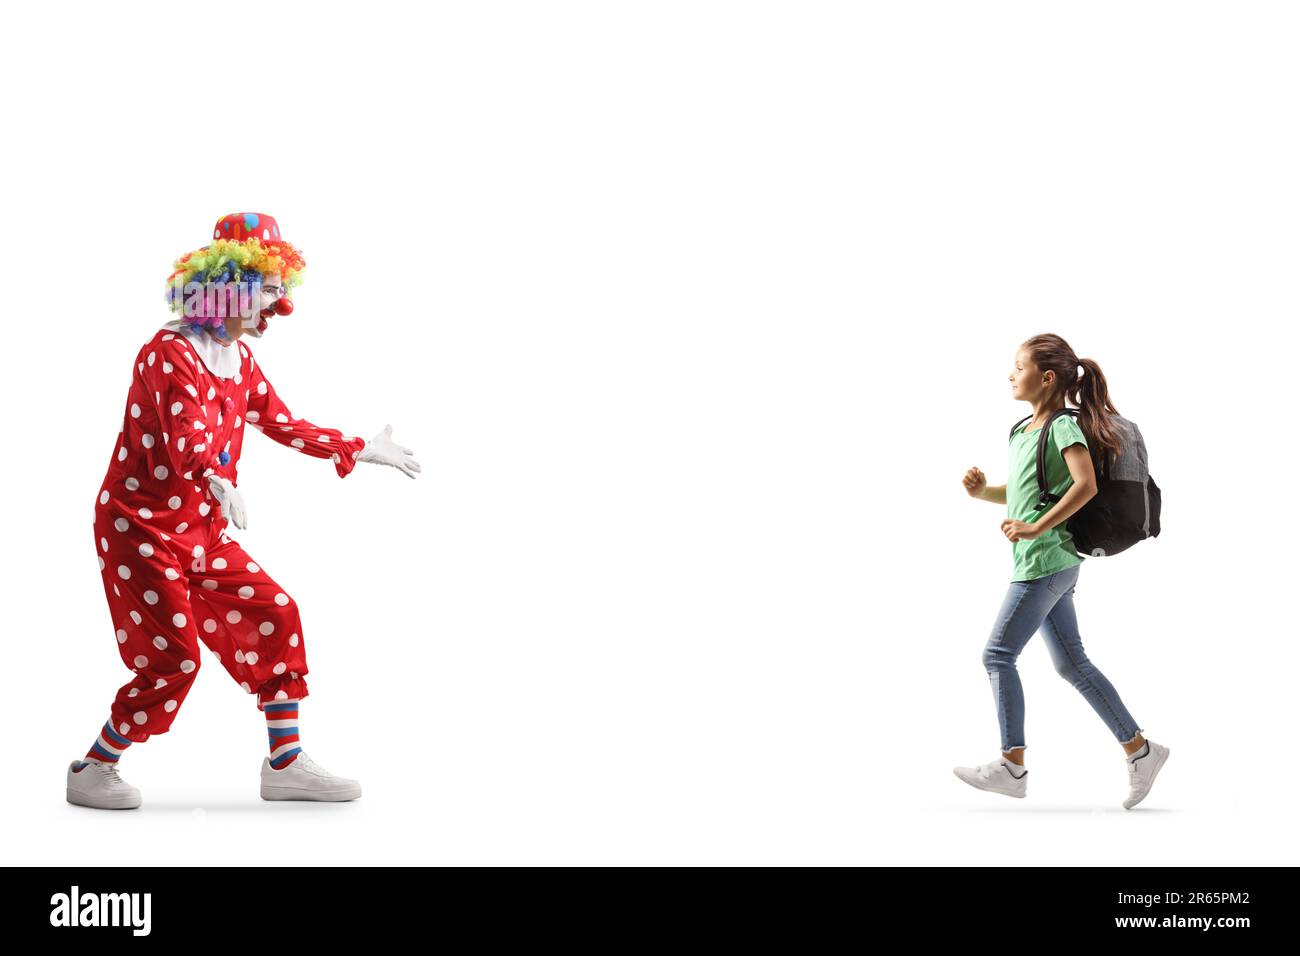 Ein Mädchen mit einem Rucksack läuft auf einen Clown zu, isoliert auf weißem Hintergrund Stockfoto